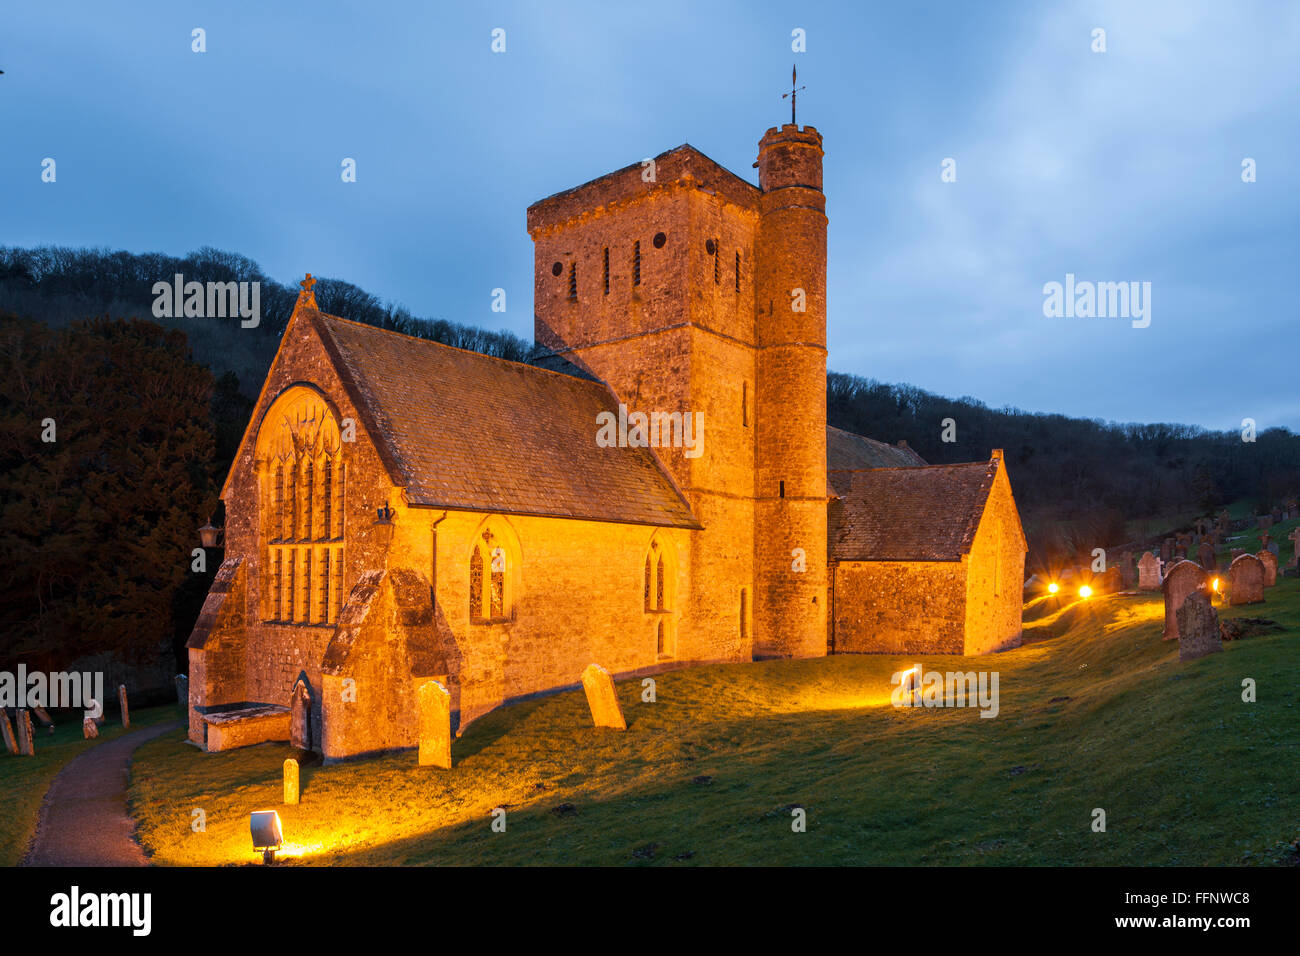 Soirée d'hiver à St Paul's Church à Branscombe, Devon, Angleterre. L'est du Devon Région de beauté naturelle exceptionnelle. Banque D'Images